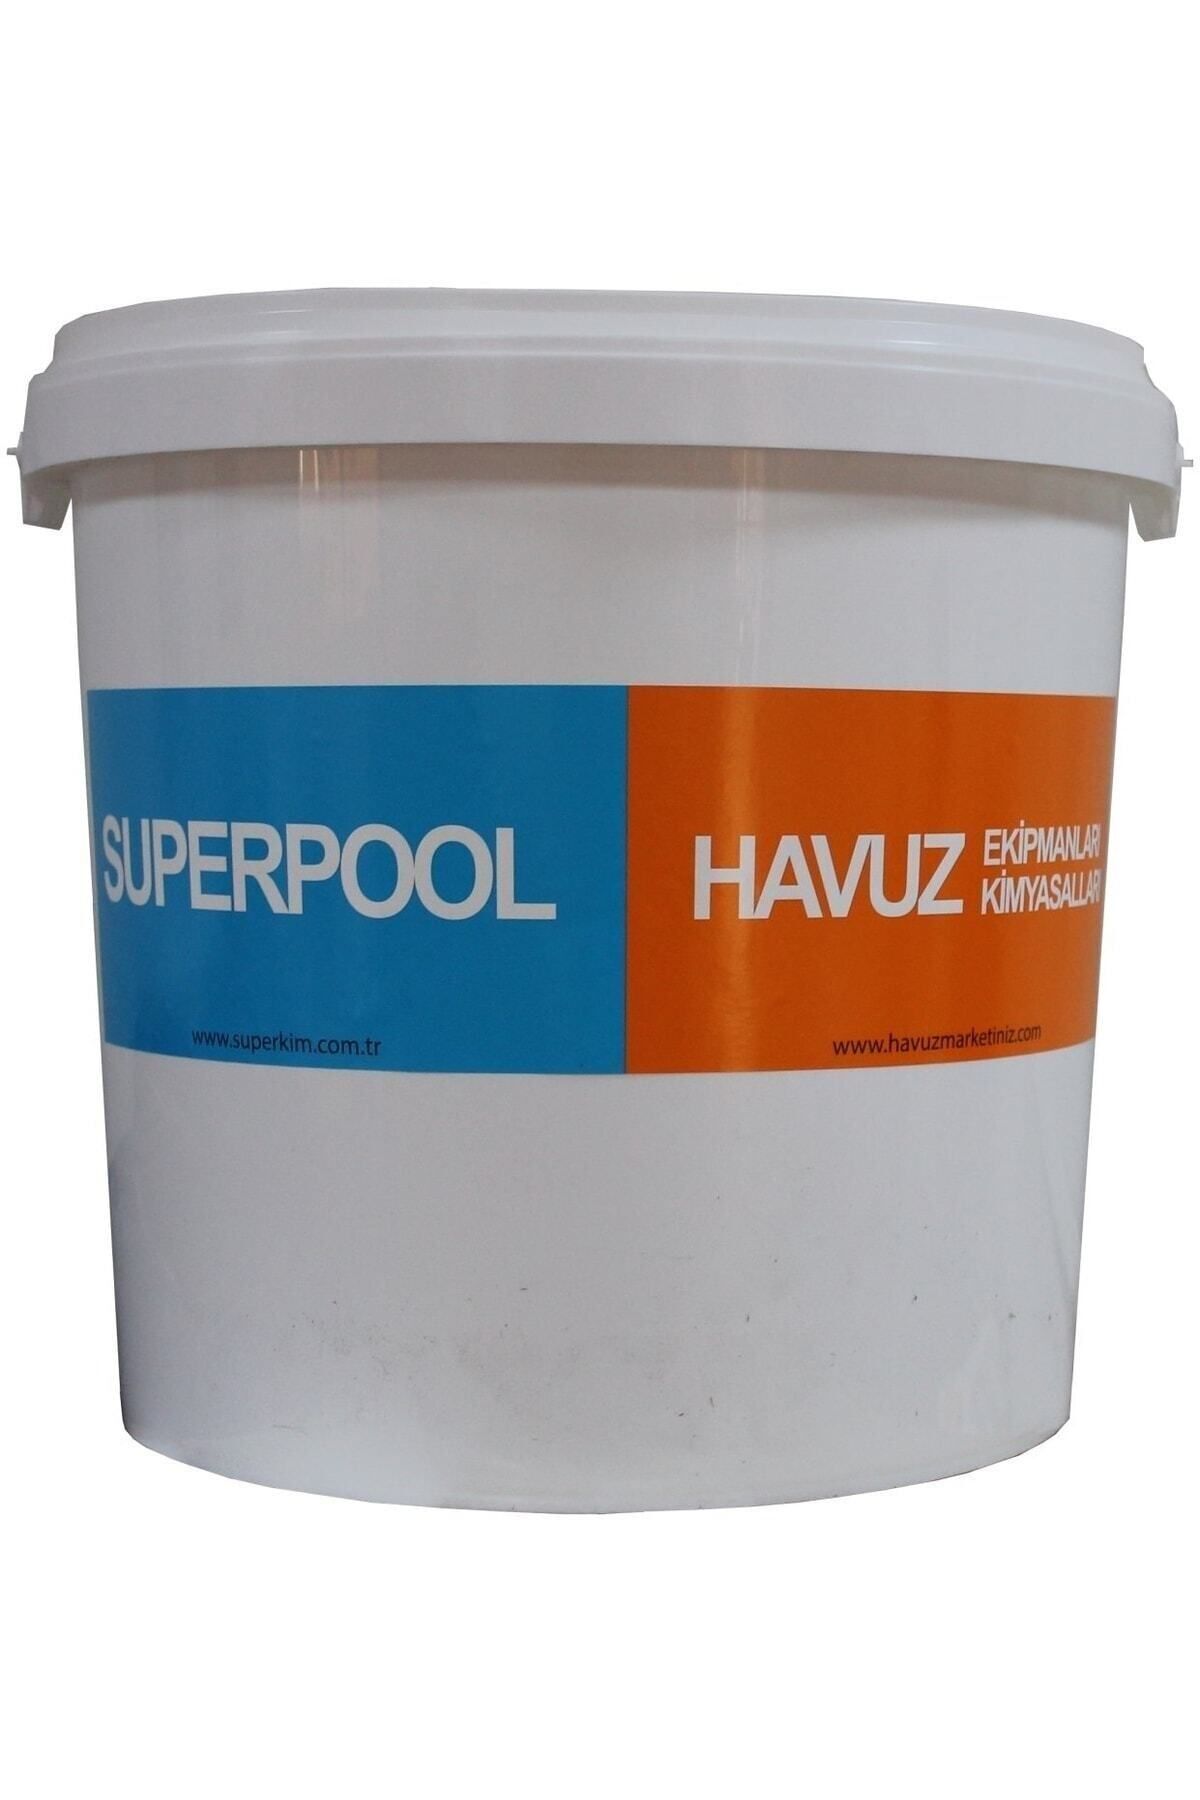 SPP SUPERPOOL Superacid 25 Kg (yüzey Ve Filtre Temizleyici)